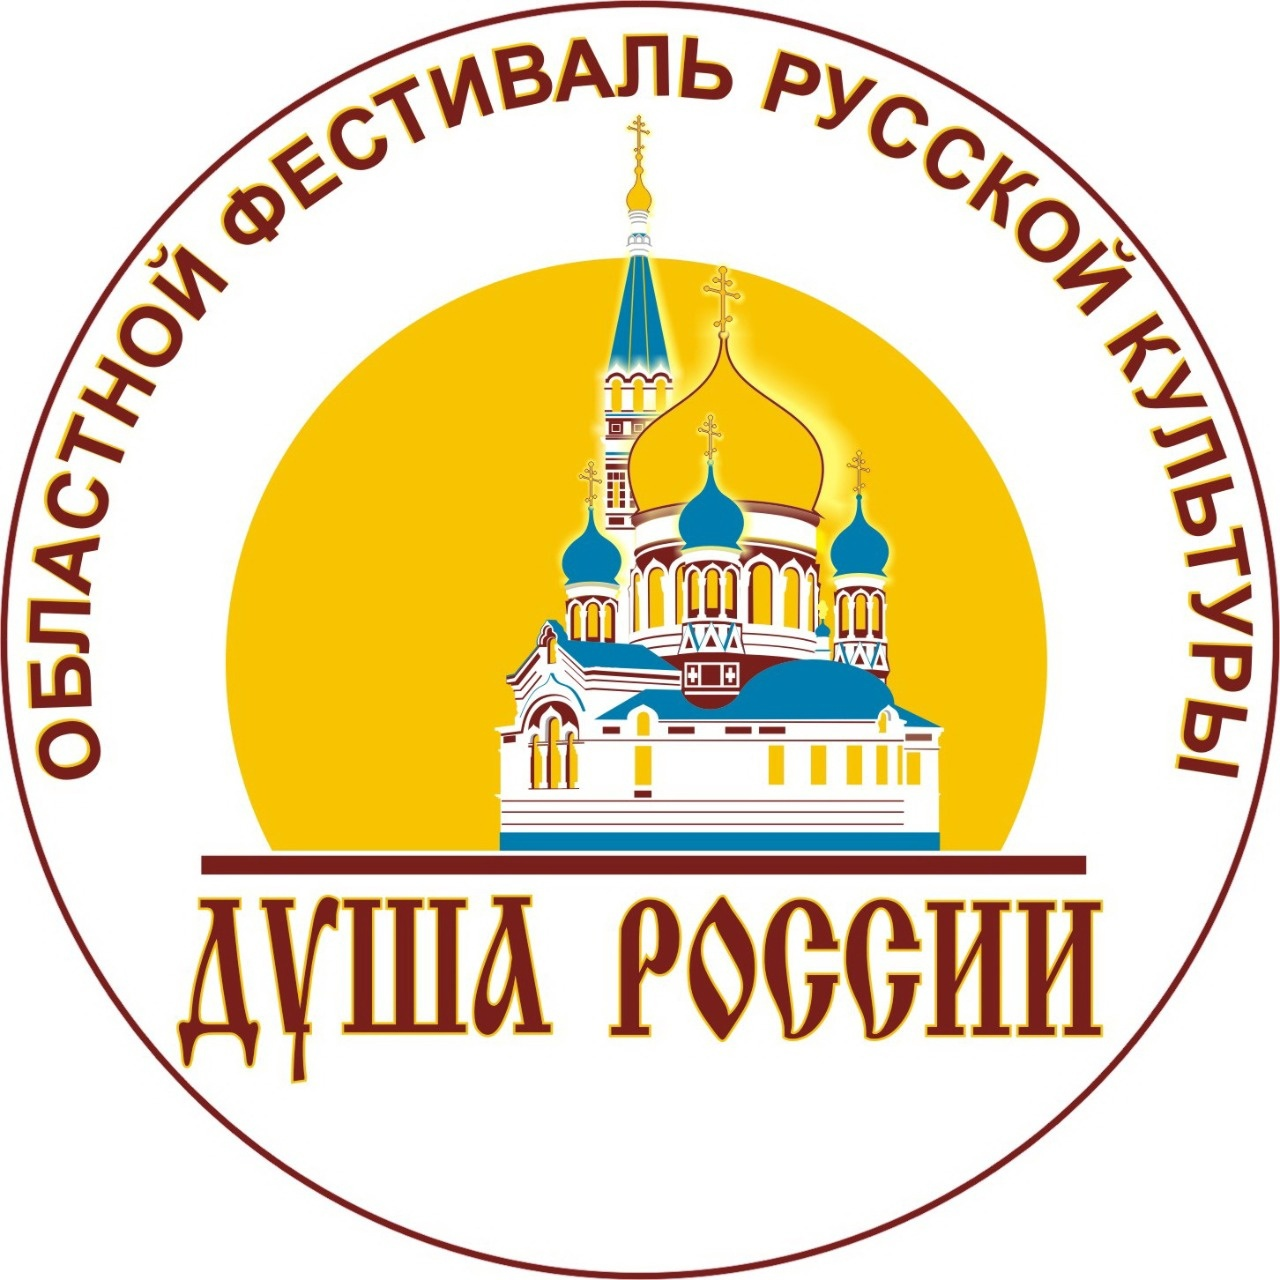 7 августа 2022 года состоится областной праздник народного творчества «Душа России»